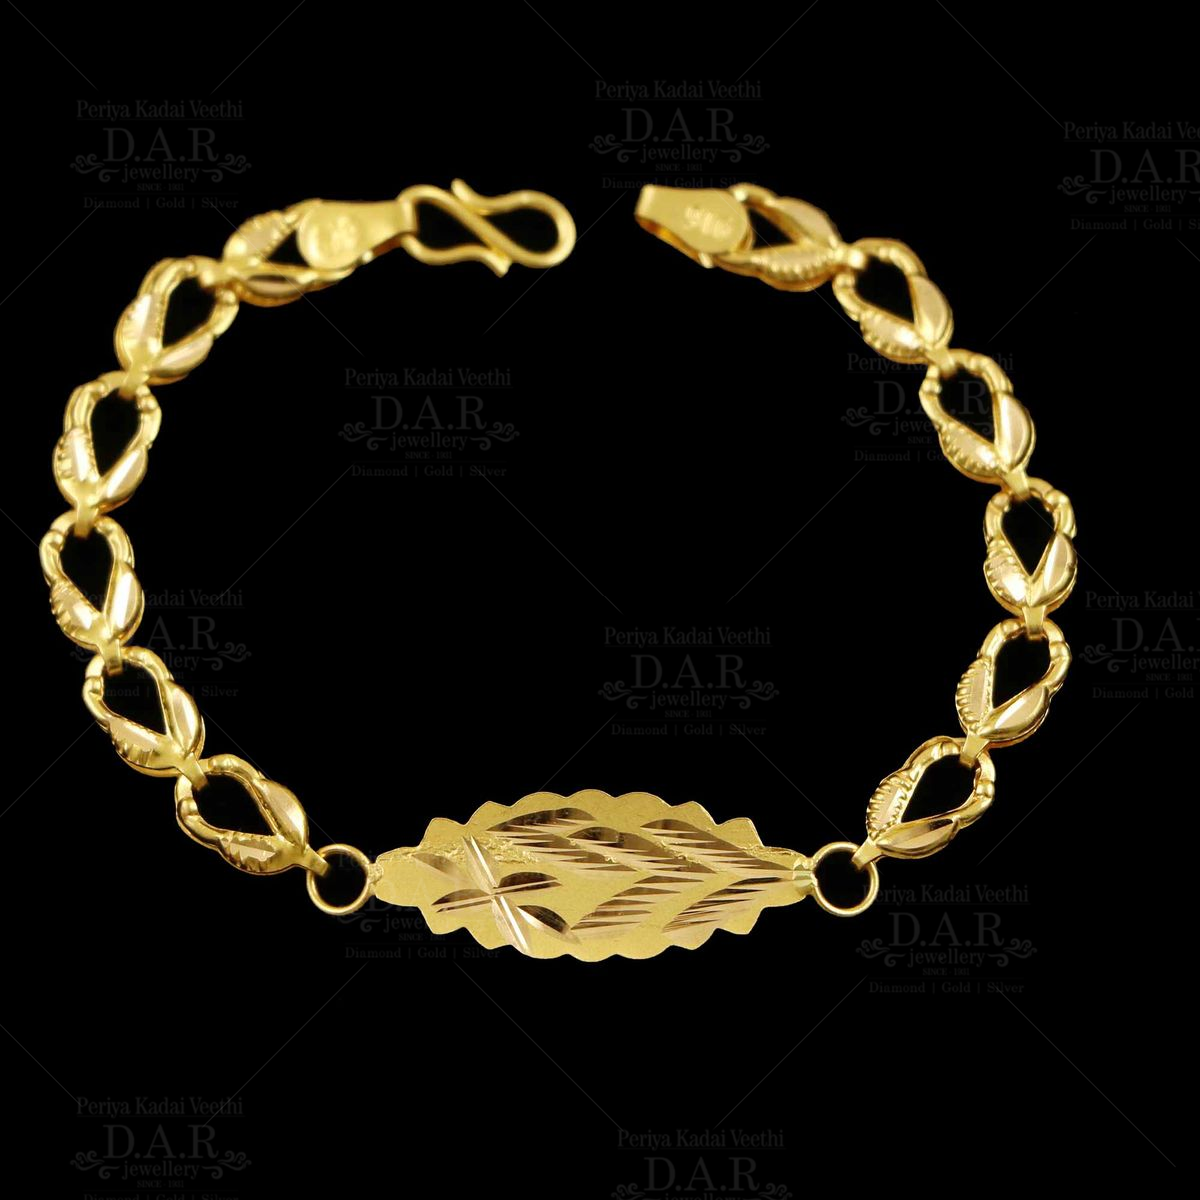 Tanishq light weight Gold Chain Bracelet Designs for Men | Latest stunning gold  bracelets for Men - YouTube